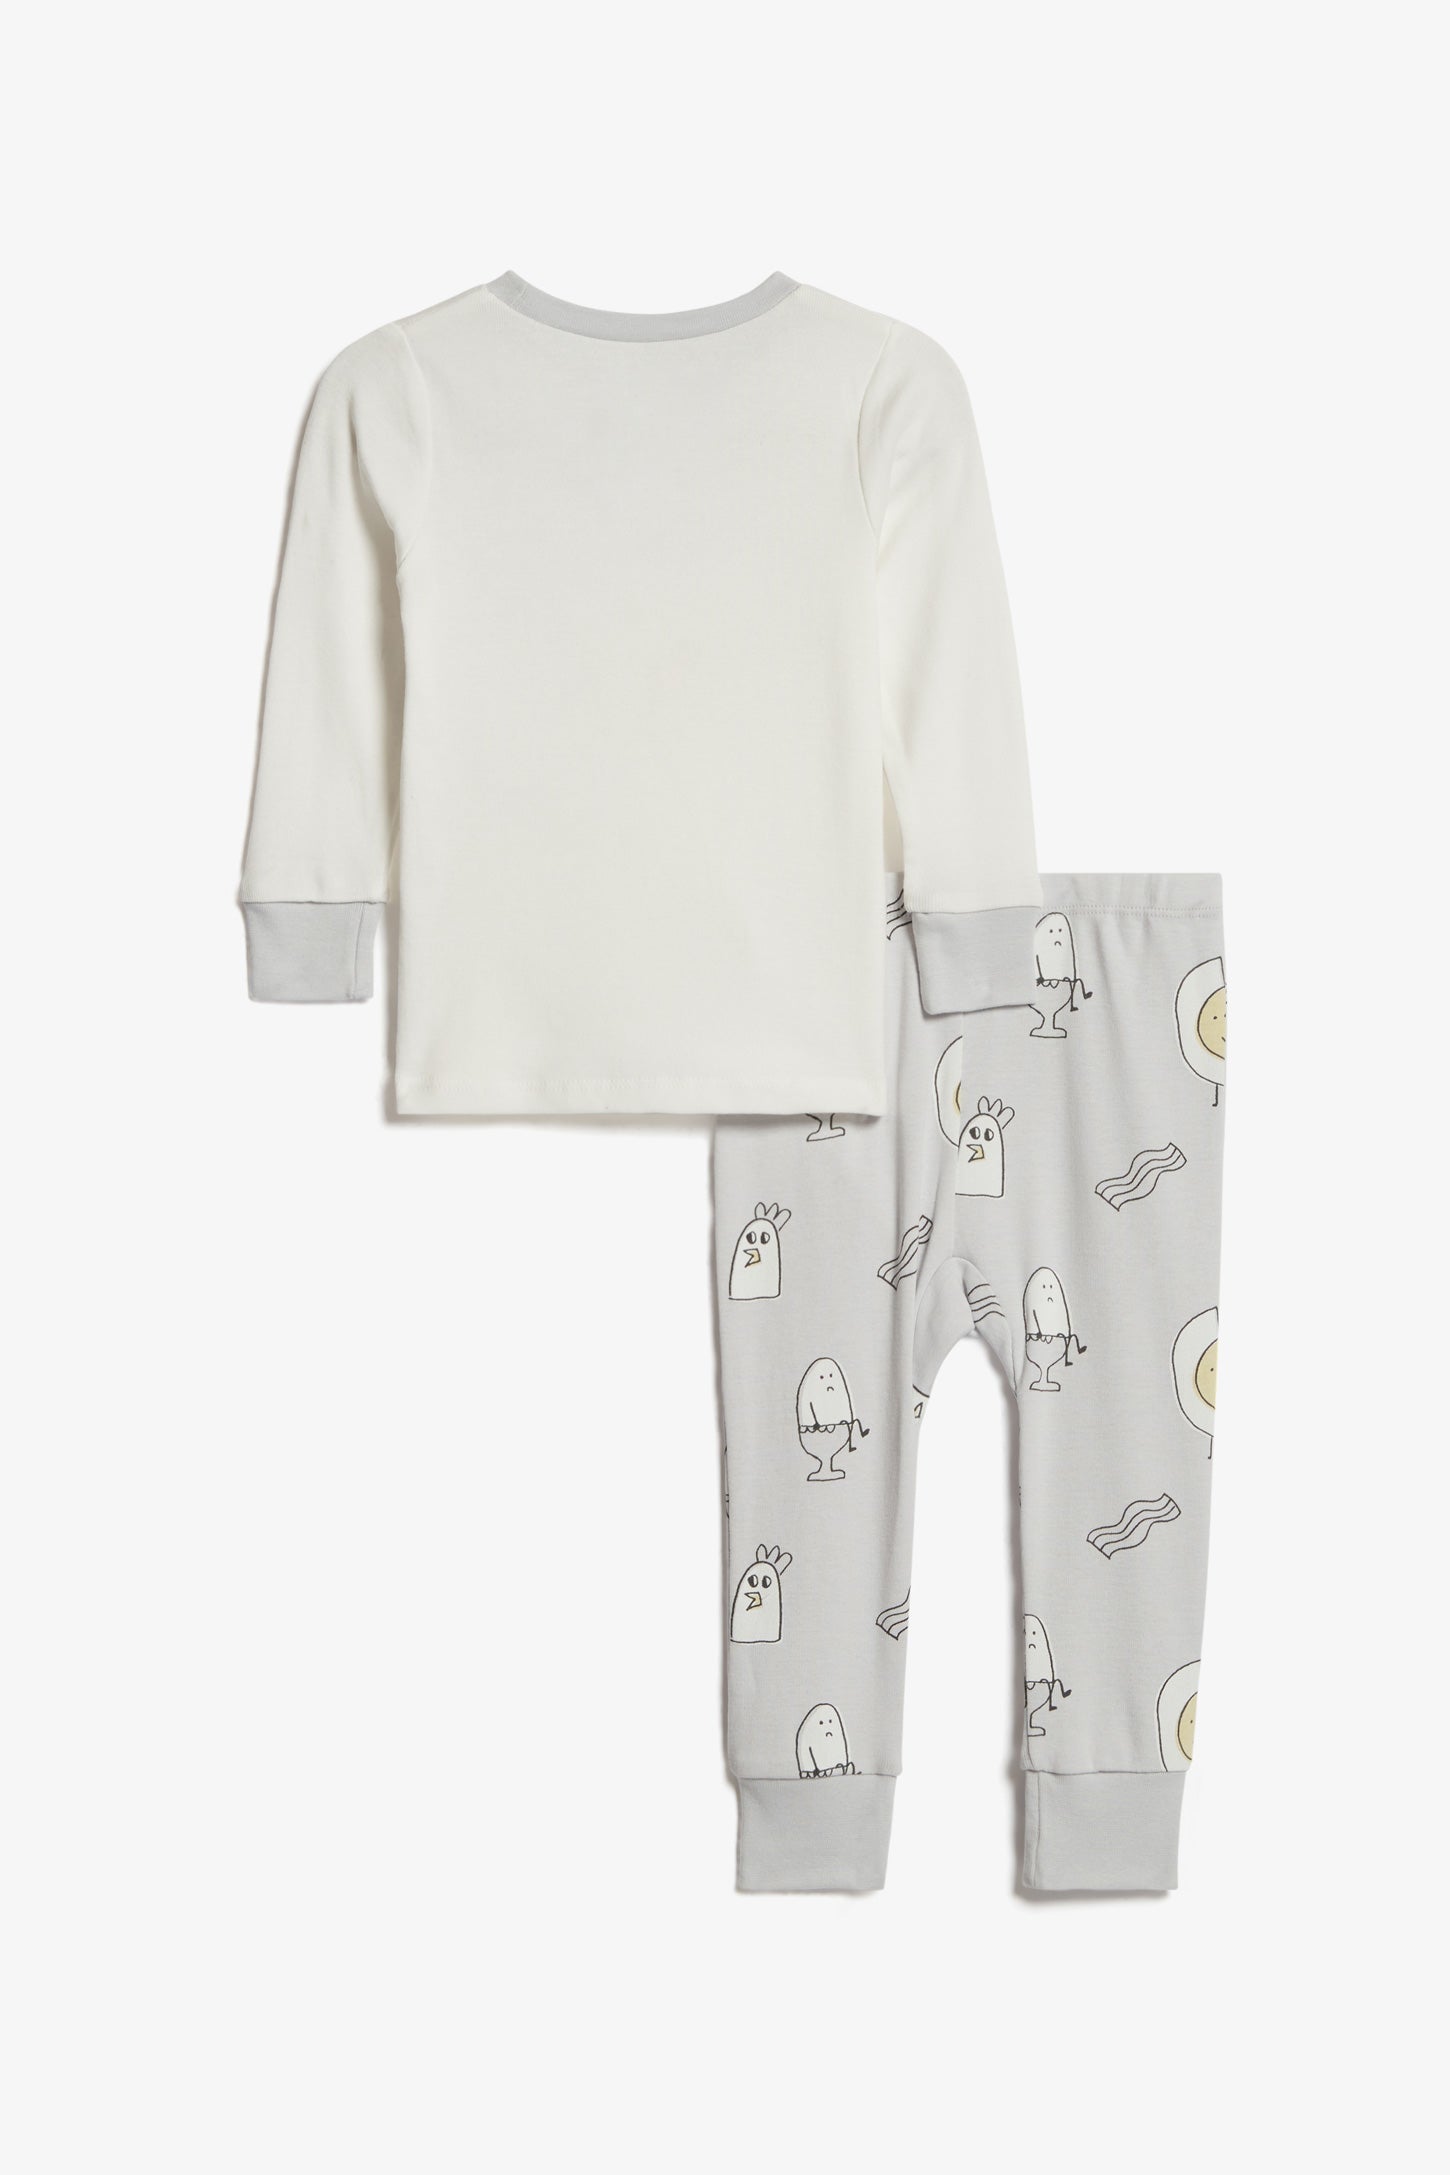 Pyjama 2-pièces en coton bio, 2T-3T - Bébé && BLANC